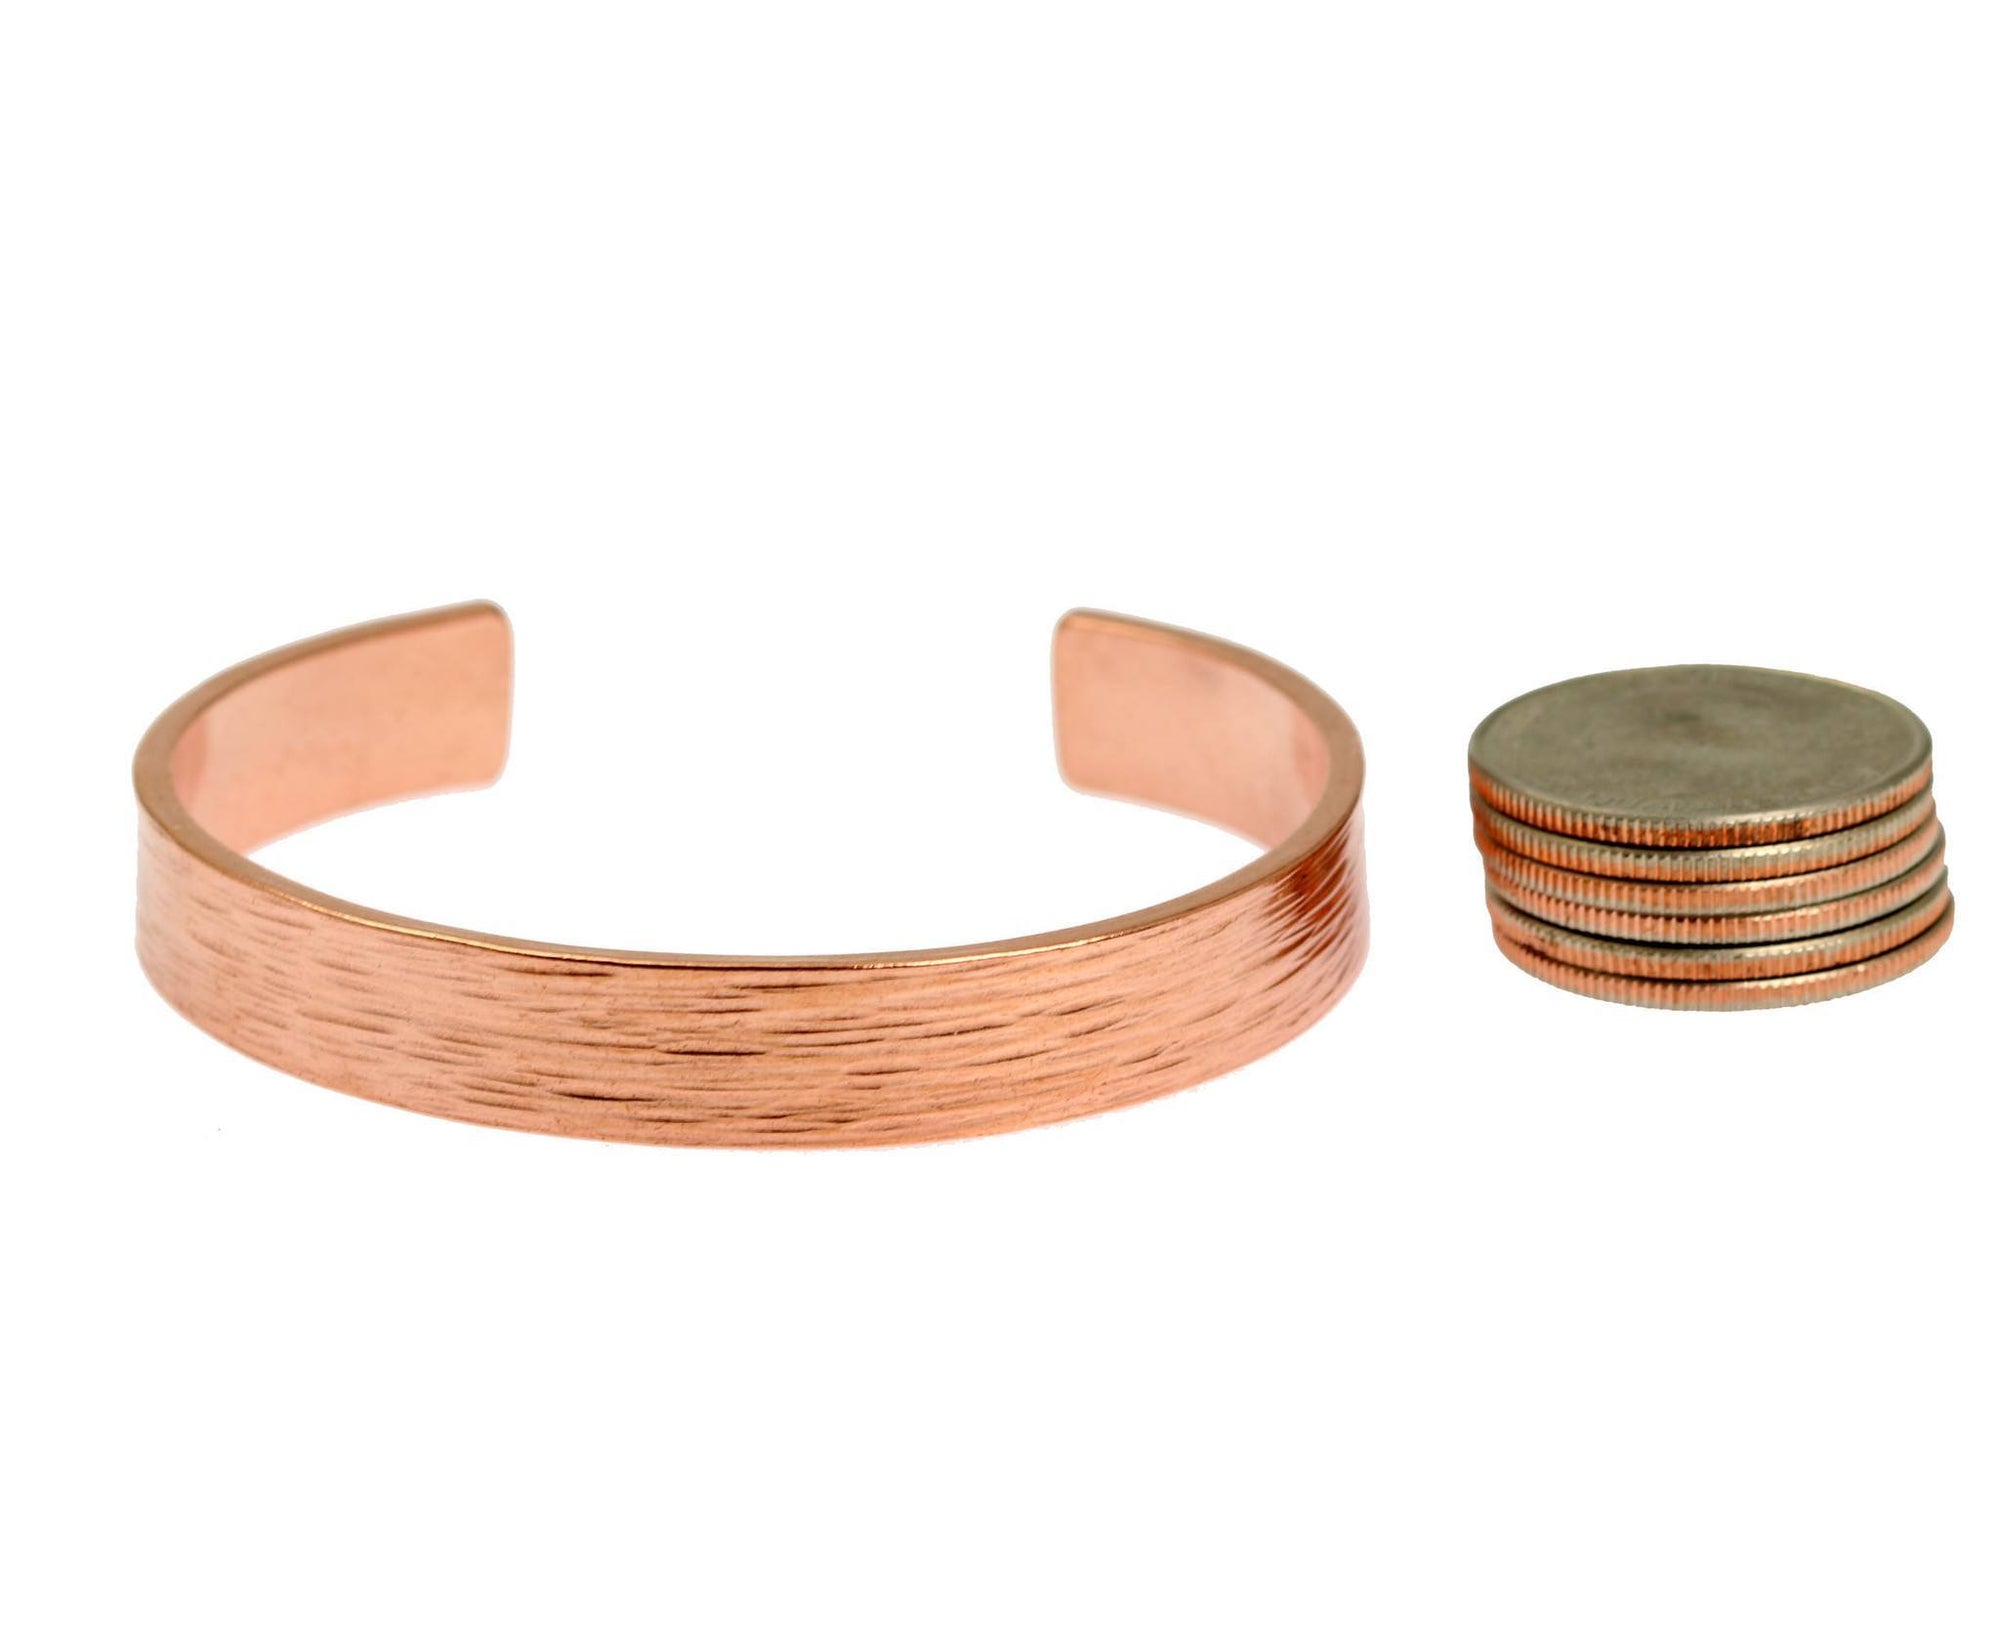 10mm Wide Bark Copper Cuff Bracelet Width Comparison